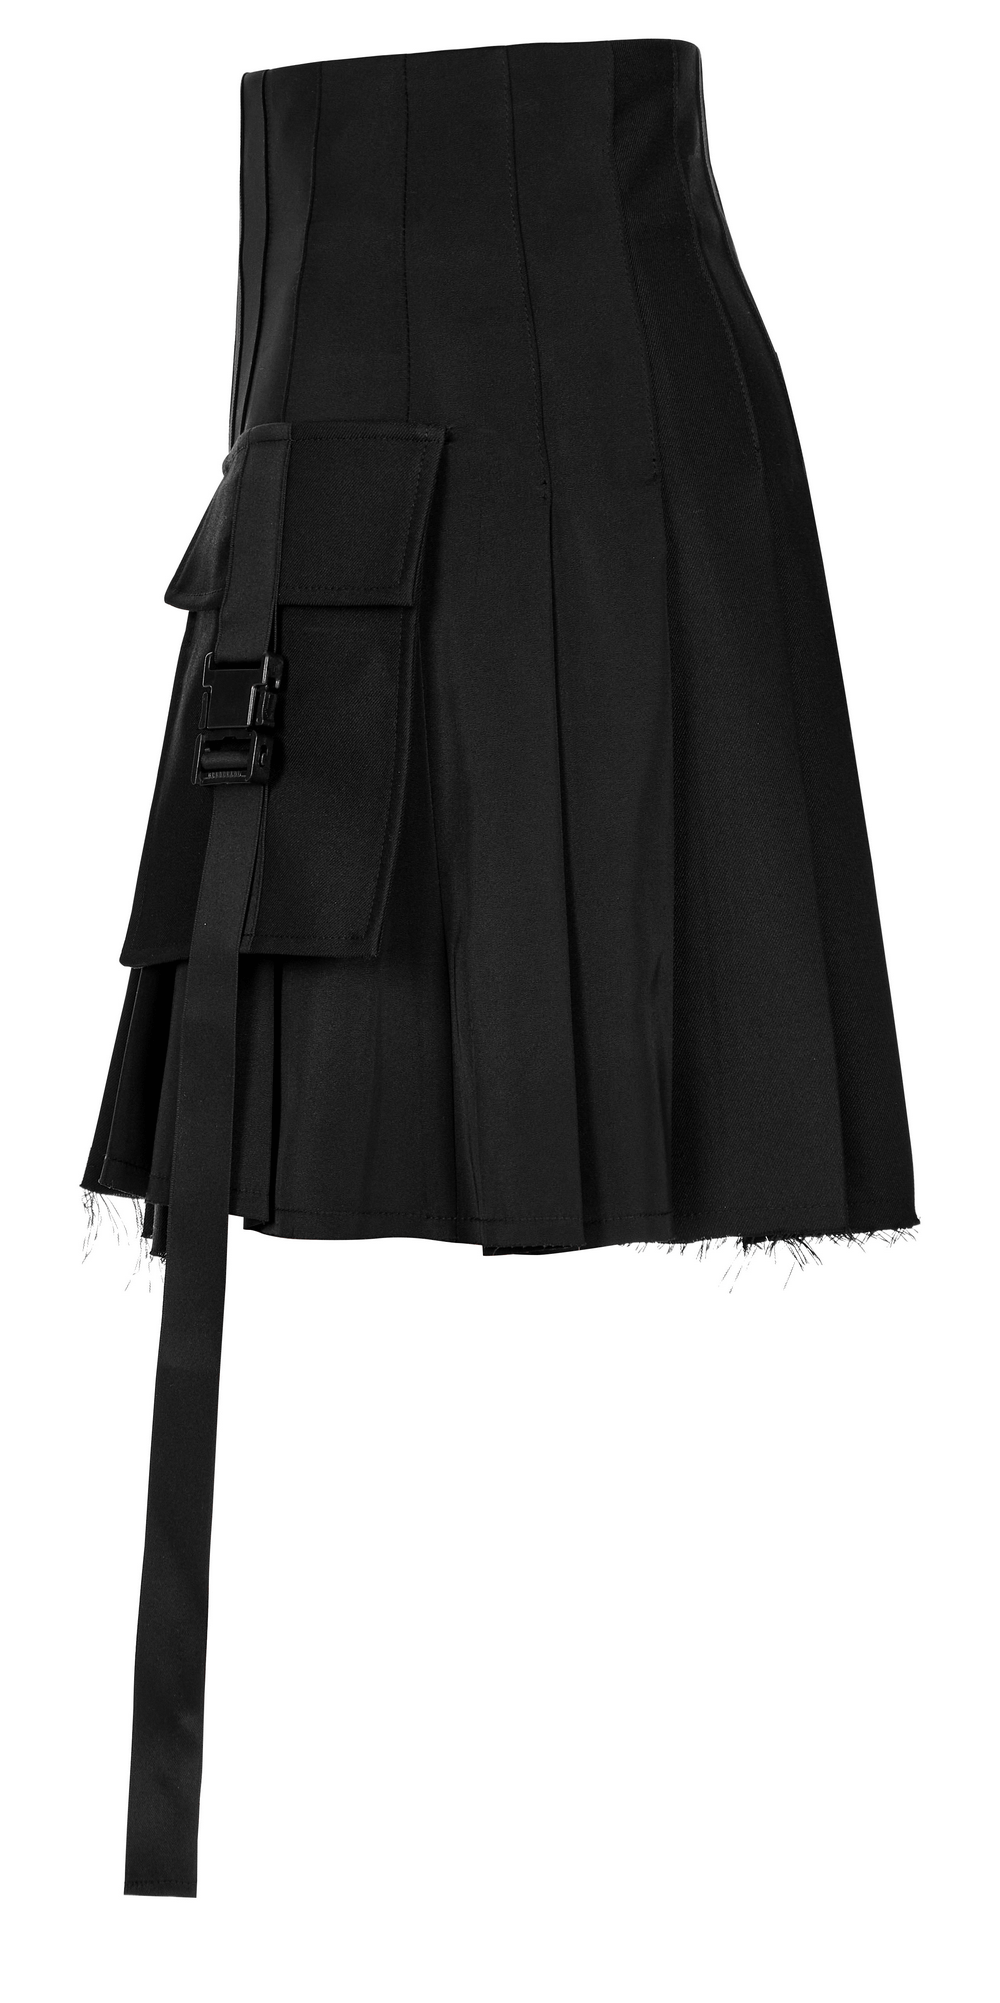 Stylish Black Paneled Pleated Skirt with Raw Hem